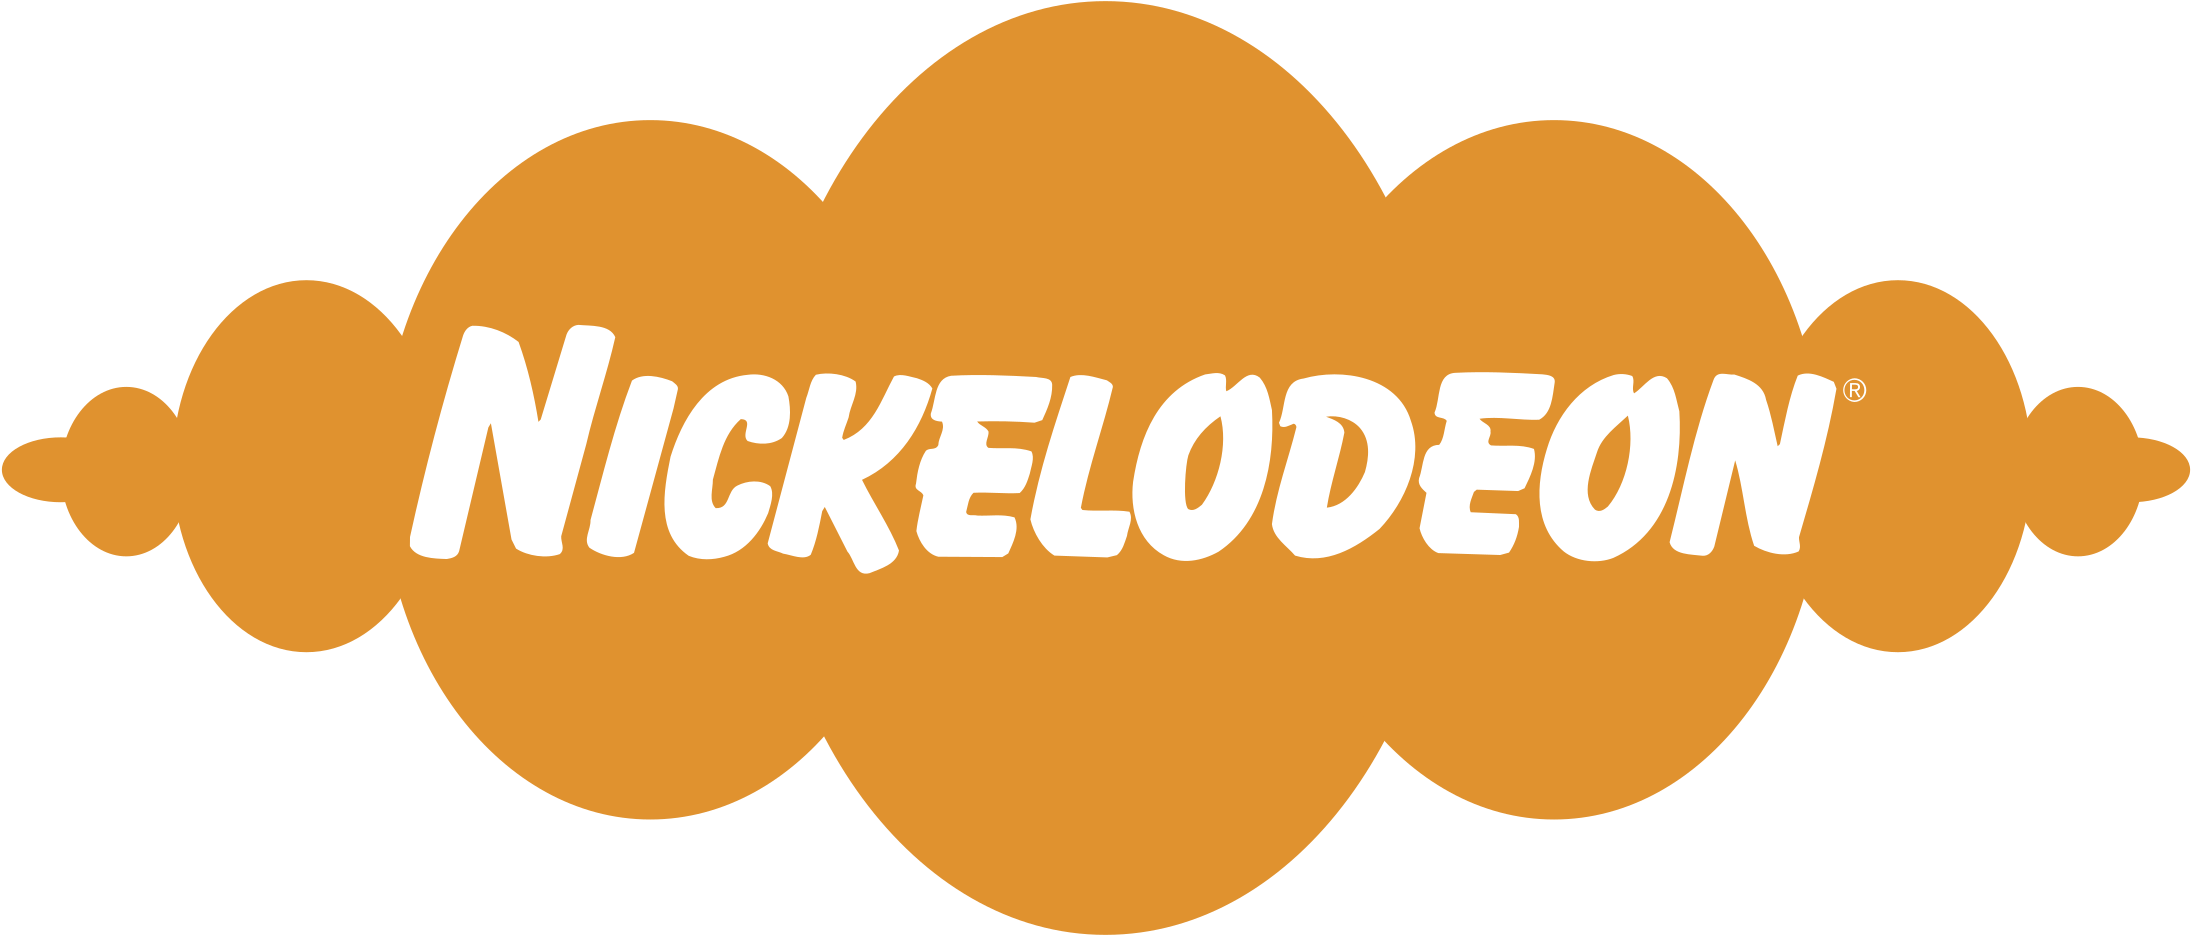 Nickelodeon Logo PNG Free Download